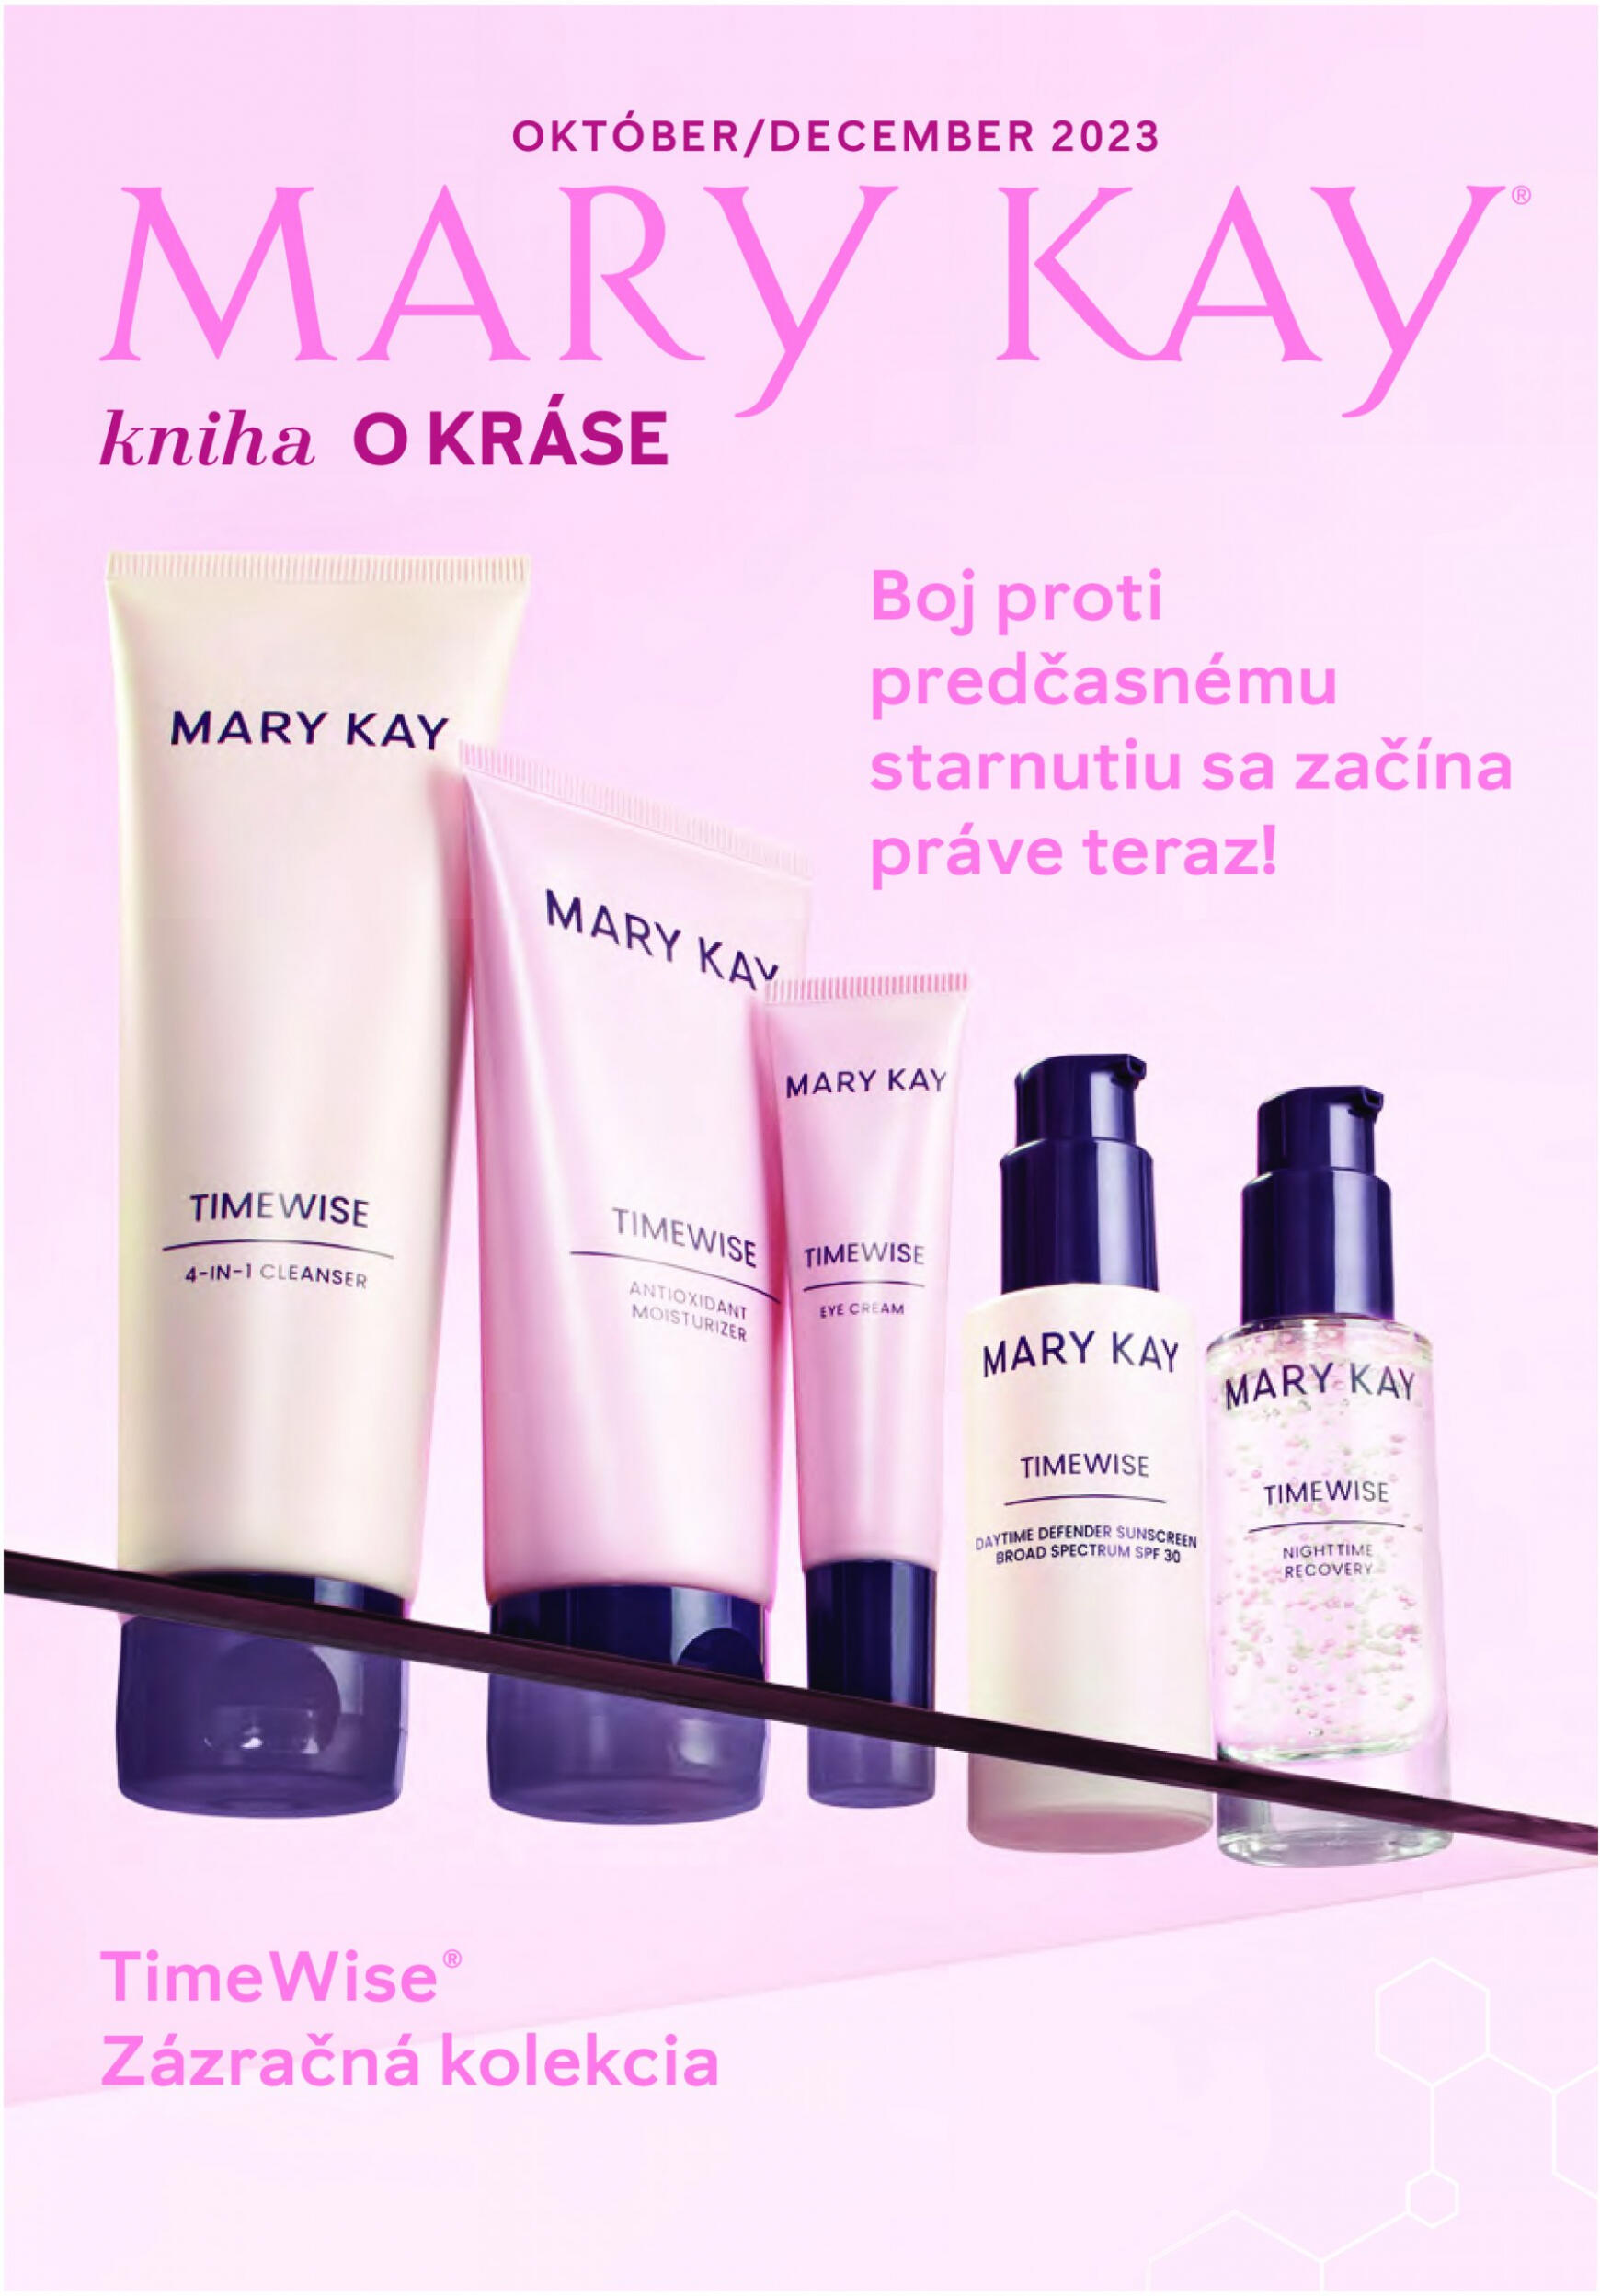 mary-kay - Mary Kay - Kniha o kráse - page: 1